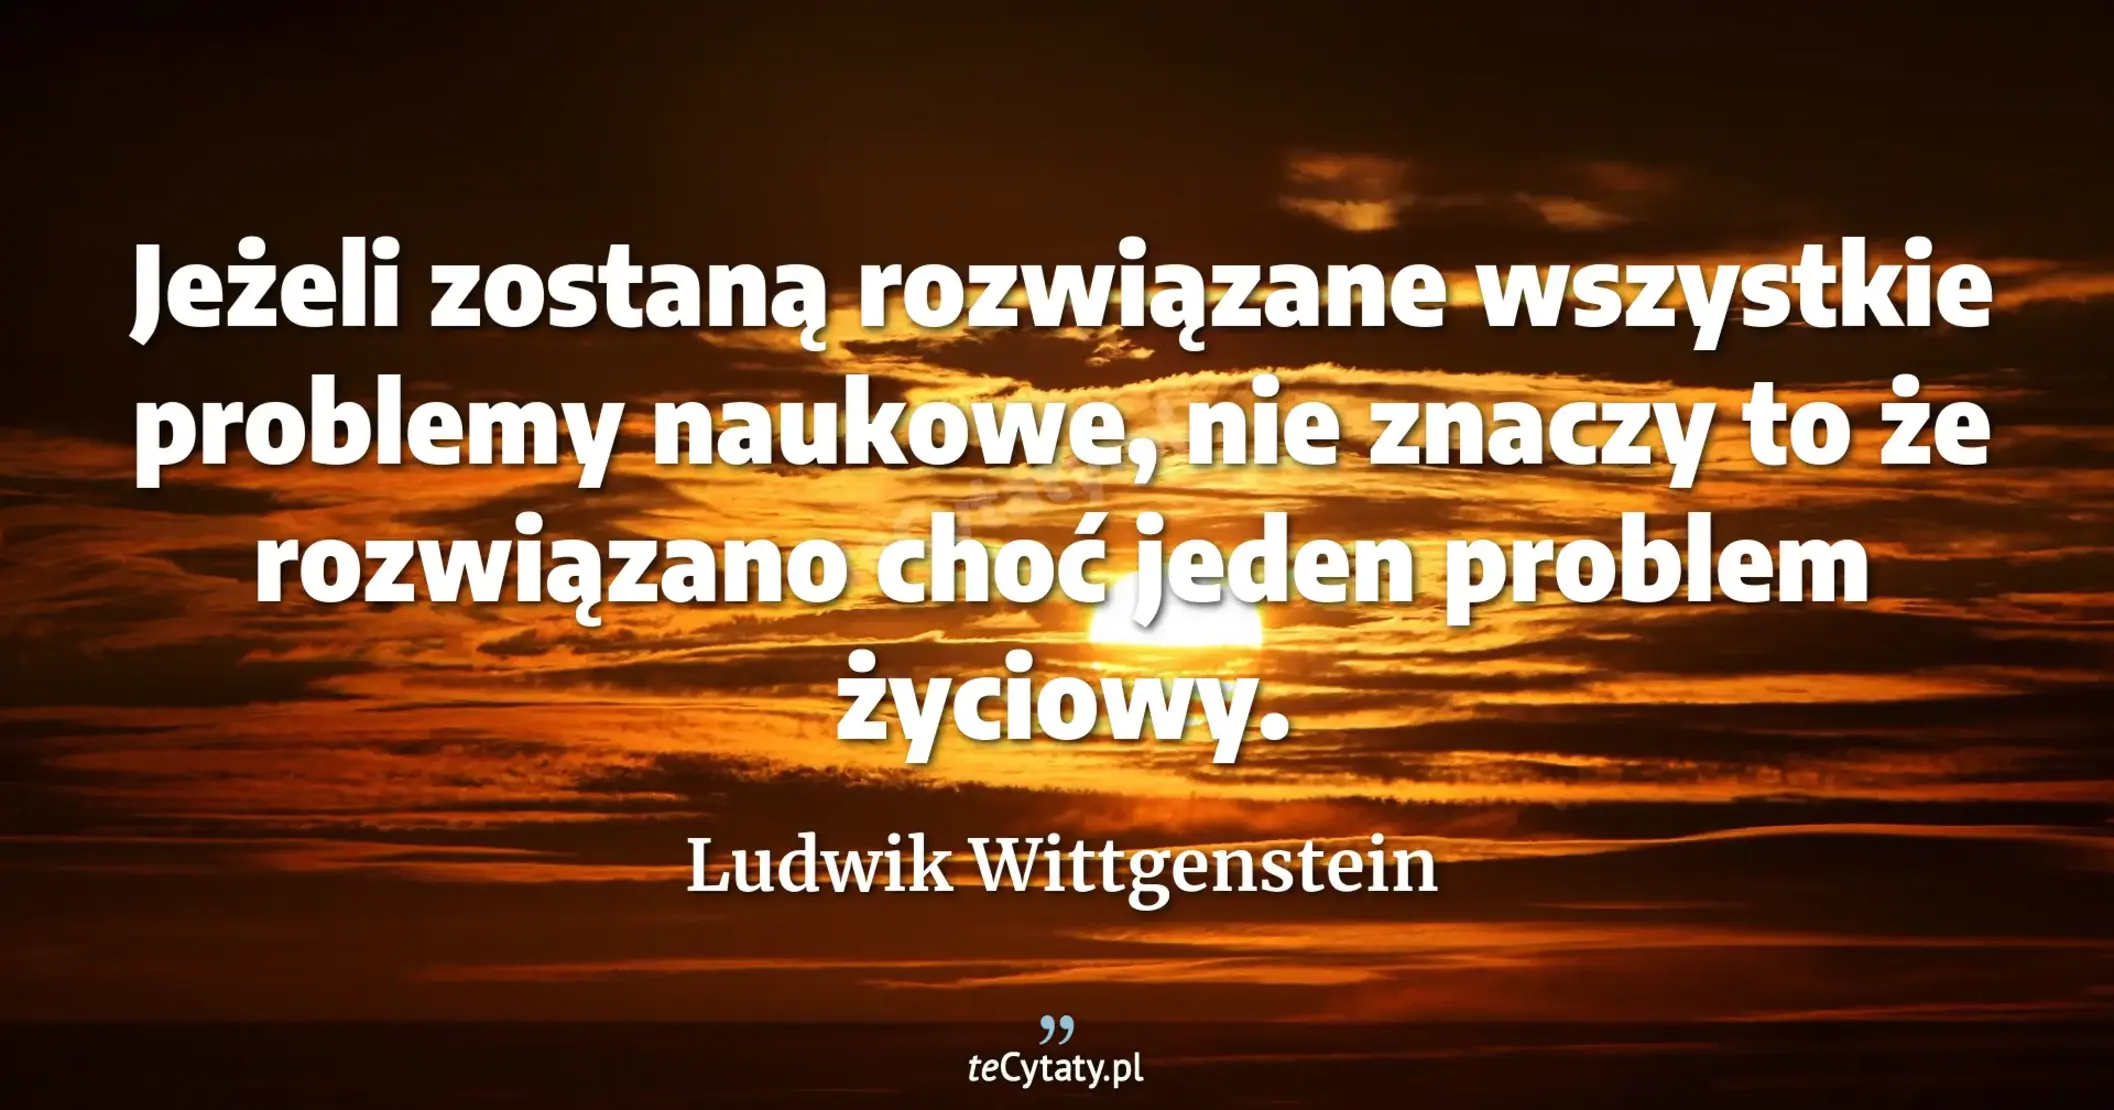 Jeżeli zostaną rozwiązane wszystkie problemy naukowe, nie znaczy to że rozwiązano choć jeden problem życiowy. - Ludwik Wittgenstein